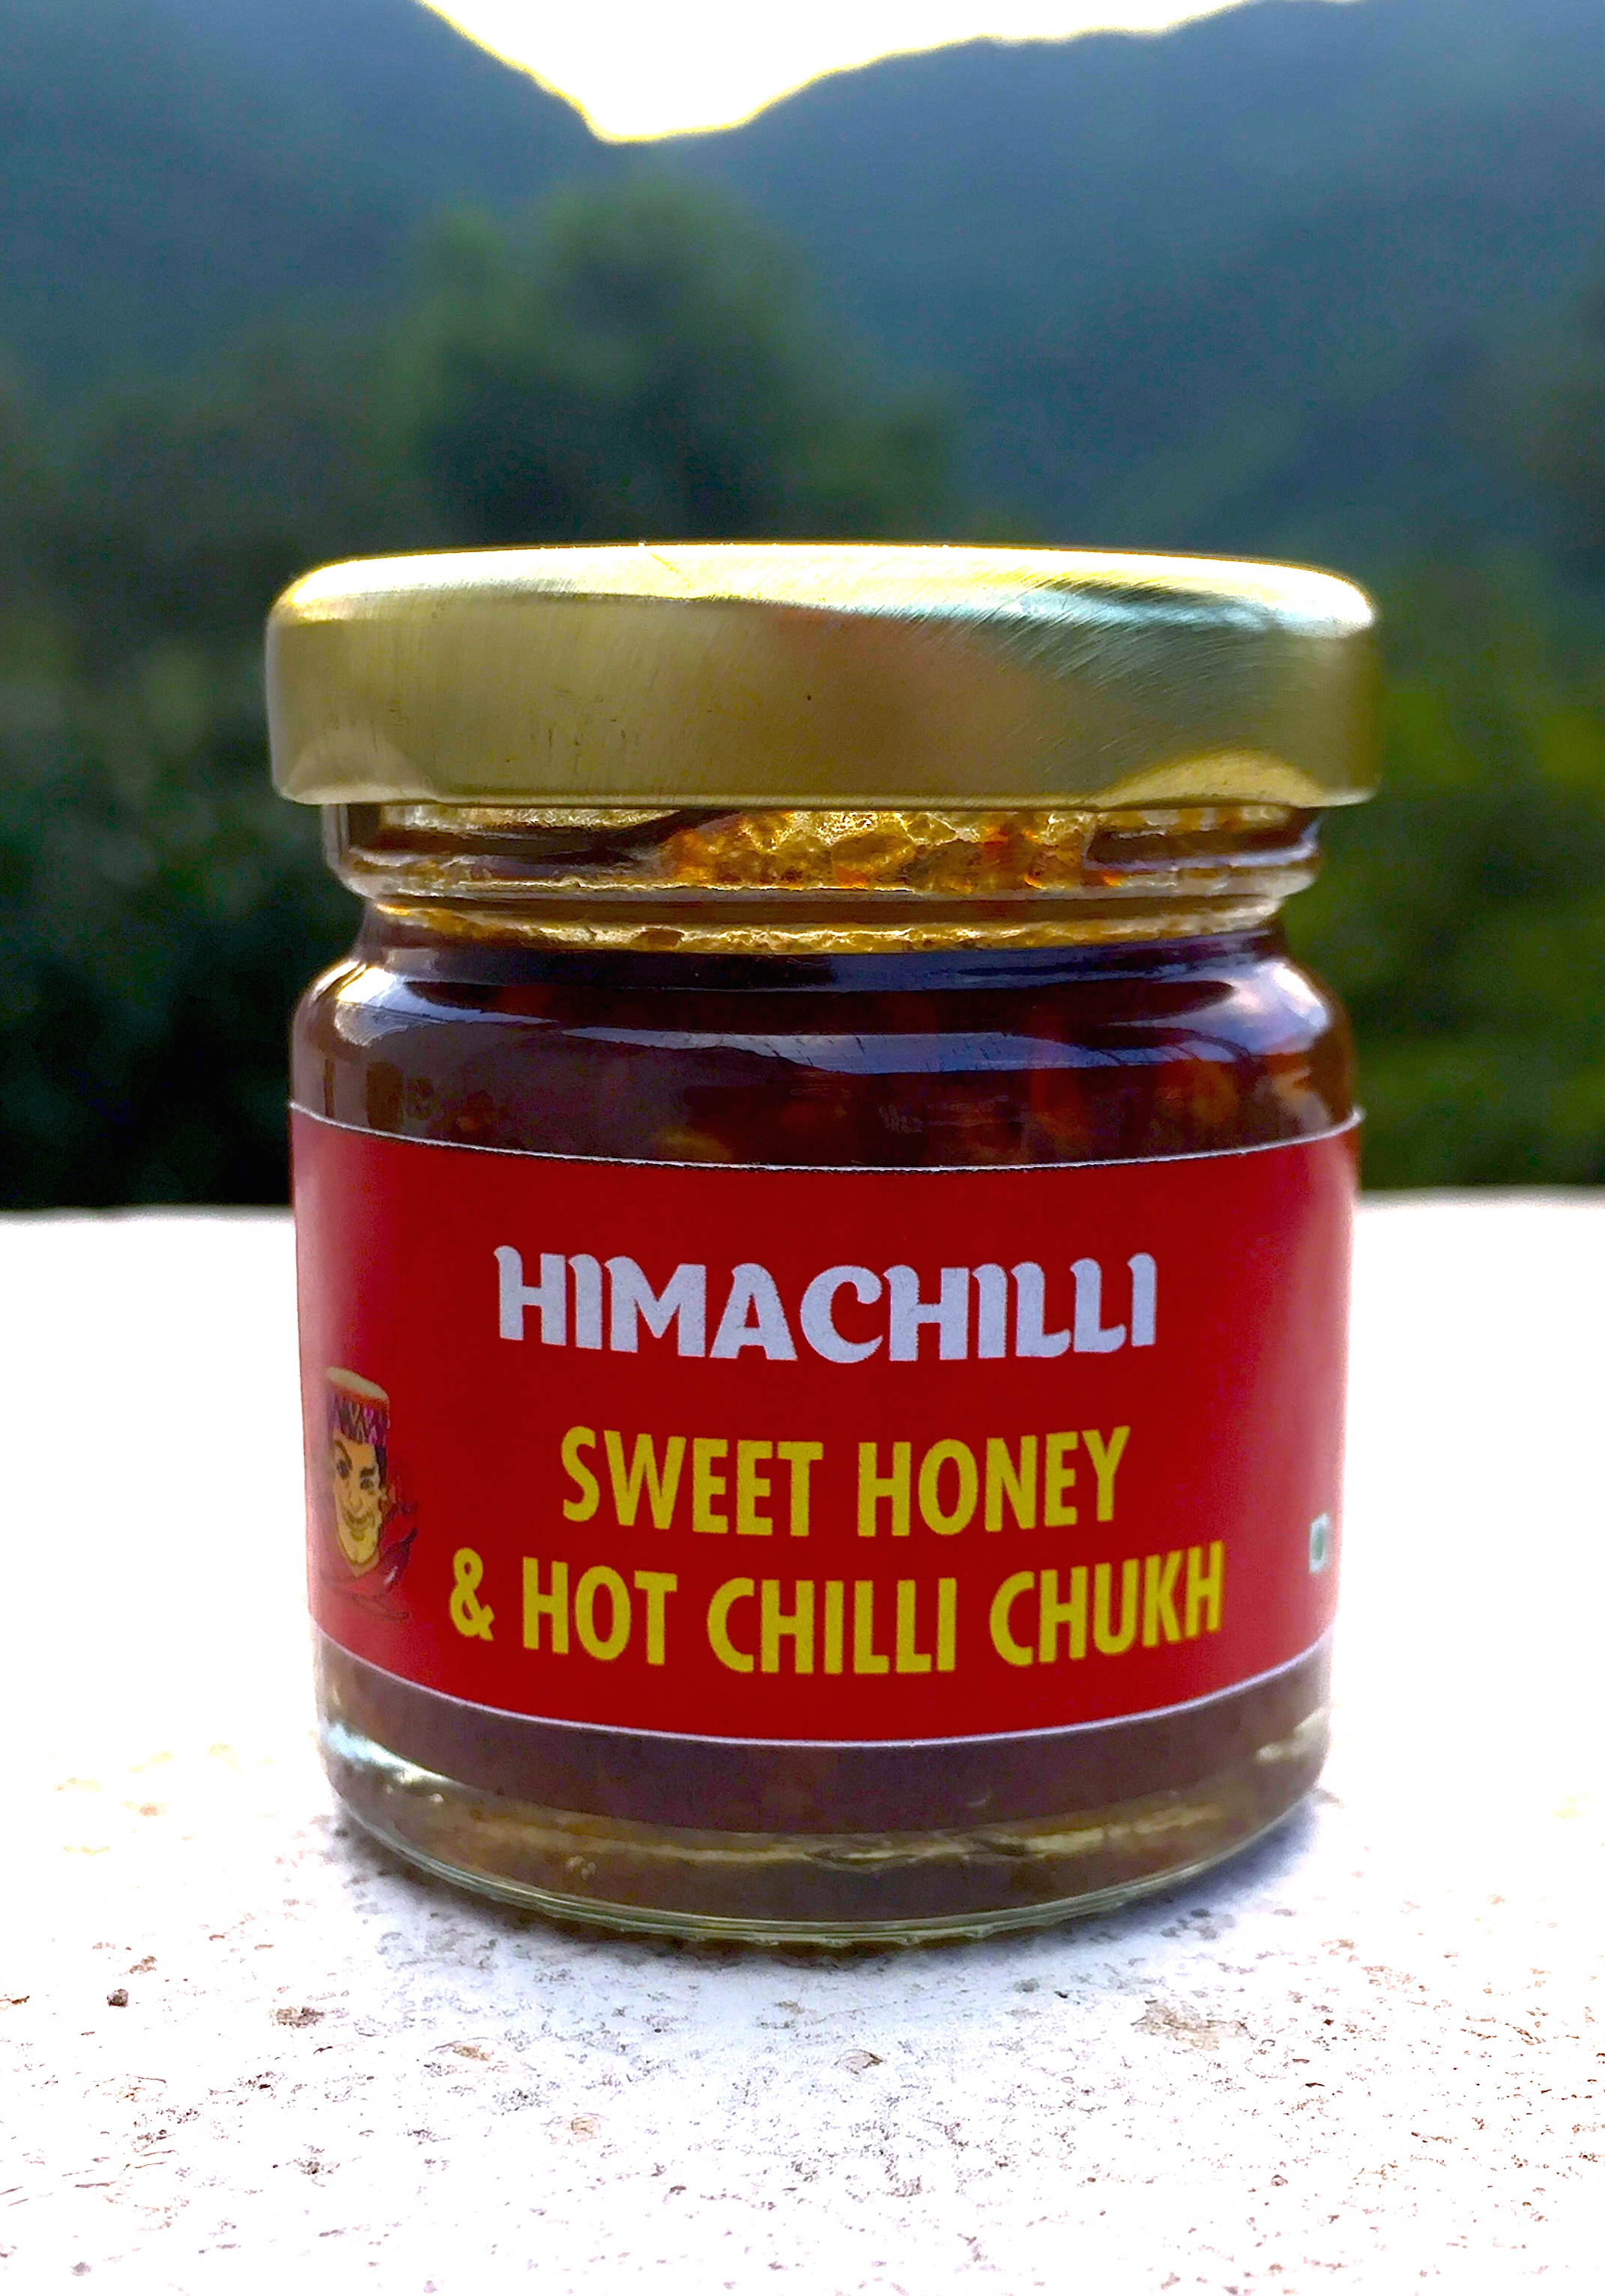 Sweet chilli chutney, Honey Chilli Chukh, Chamba Chukh, Himachilli, Sweet Chilli Pickle, Honey Red Chilli paste, Sweet Chilli Sauce, Sweet Chilli Chicken, Samosa dip, Chilli Chutney, 